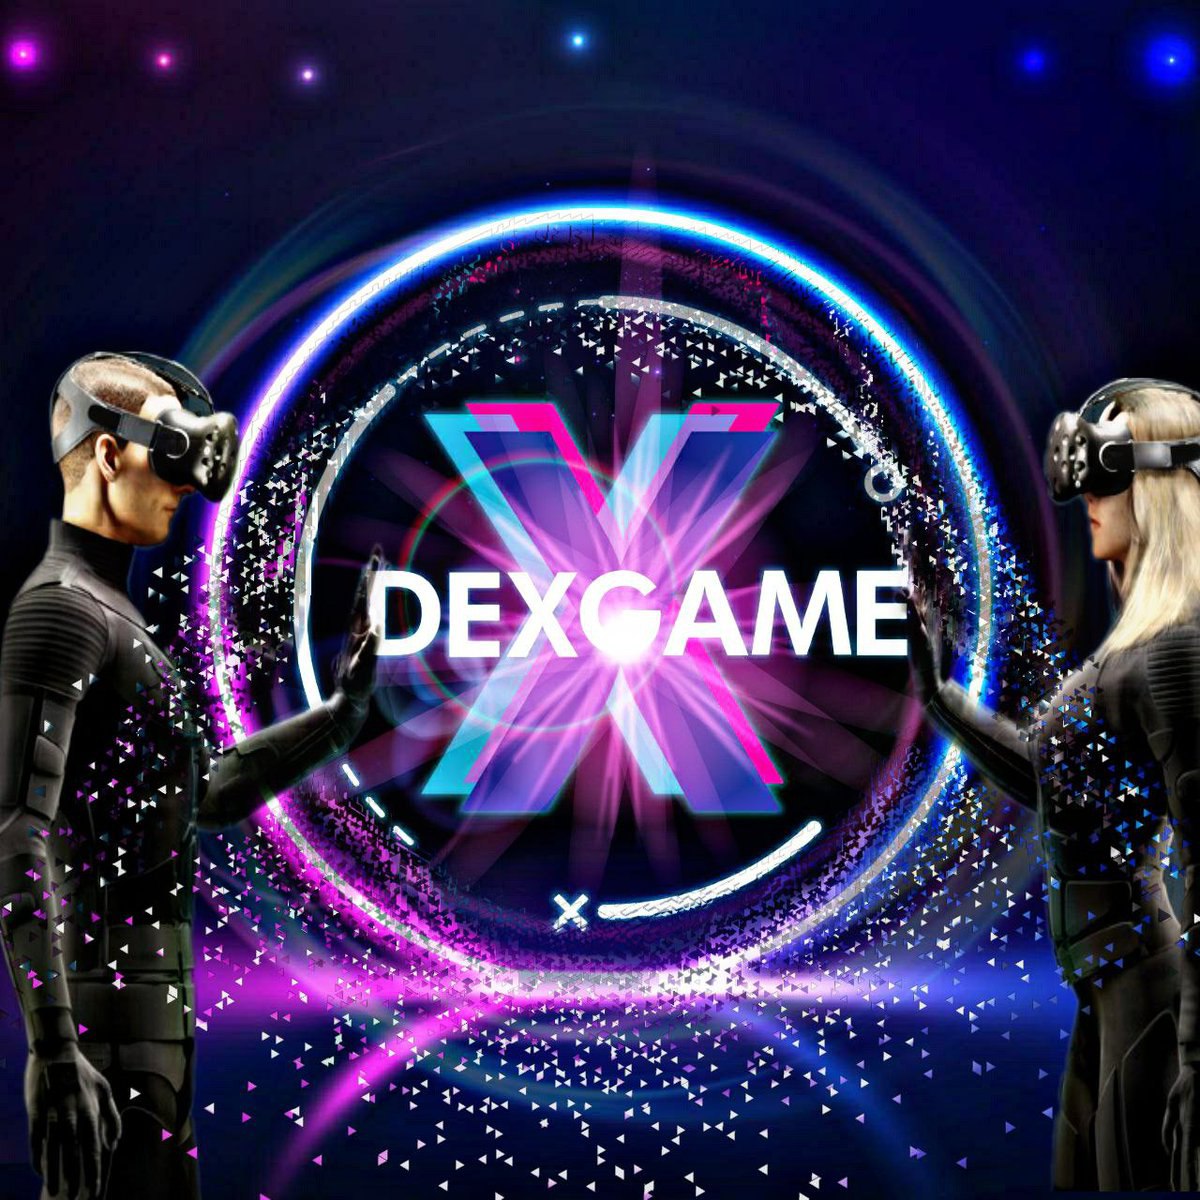 #dexgame  
Oyun dünyasını blockchain tabanıyla birleştirerek benzersiz bir ekosistem oluşturmayı hedefleyen #dexgame projesi ilk listelemesini mexc borsasında yaptı.